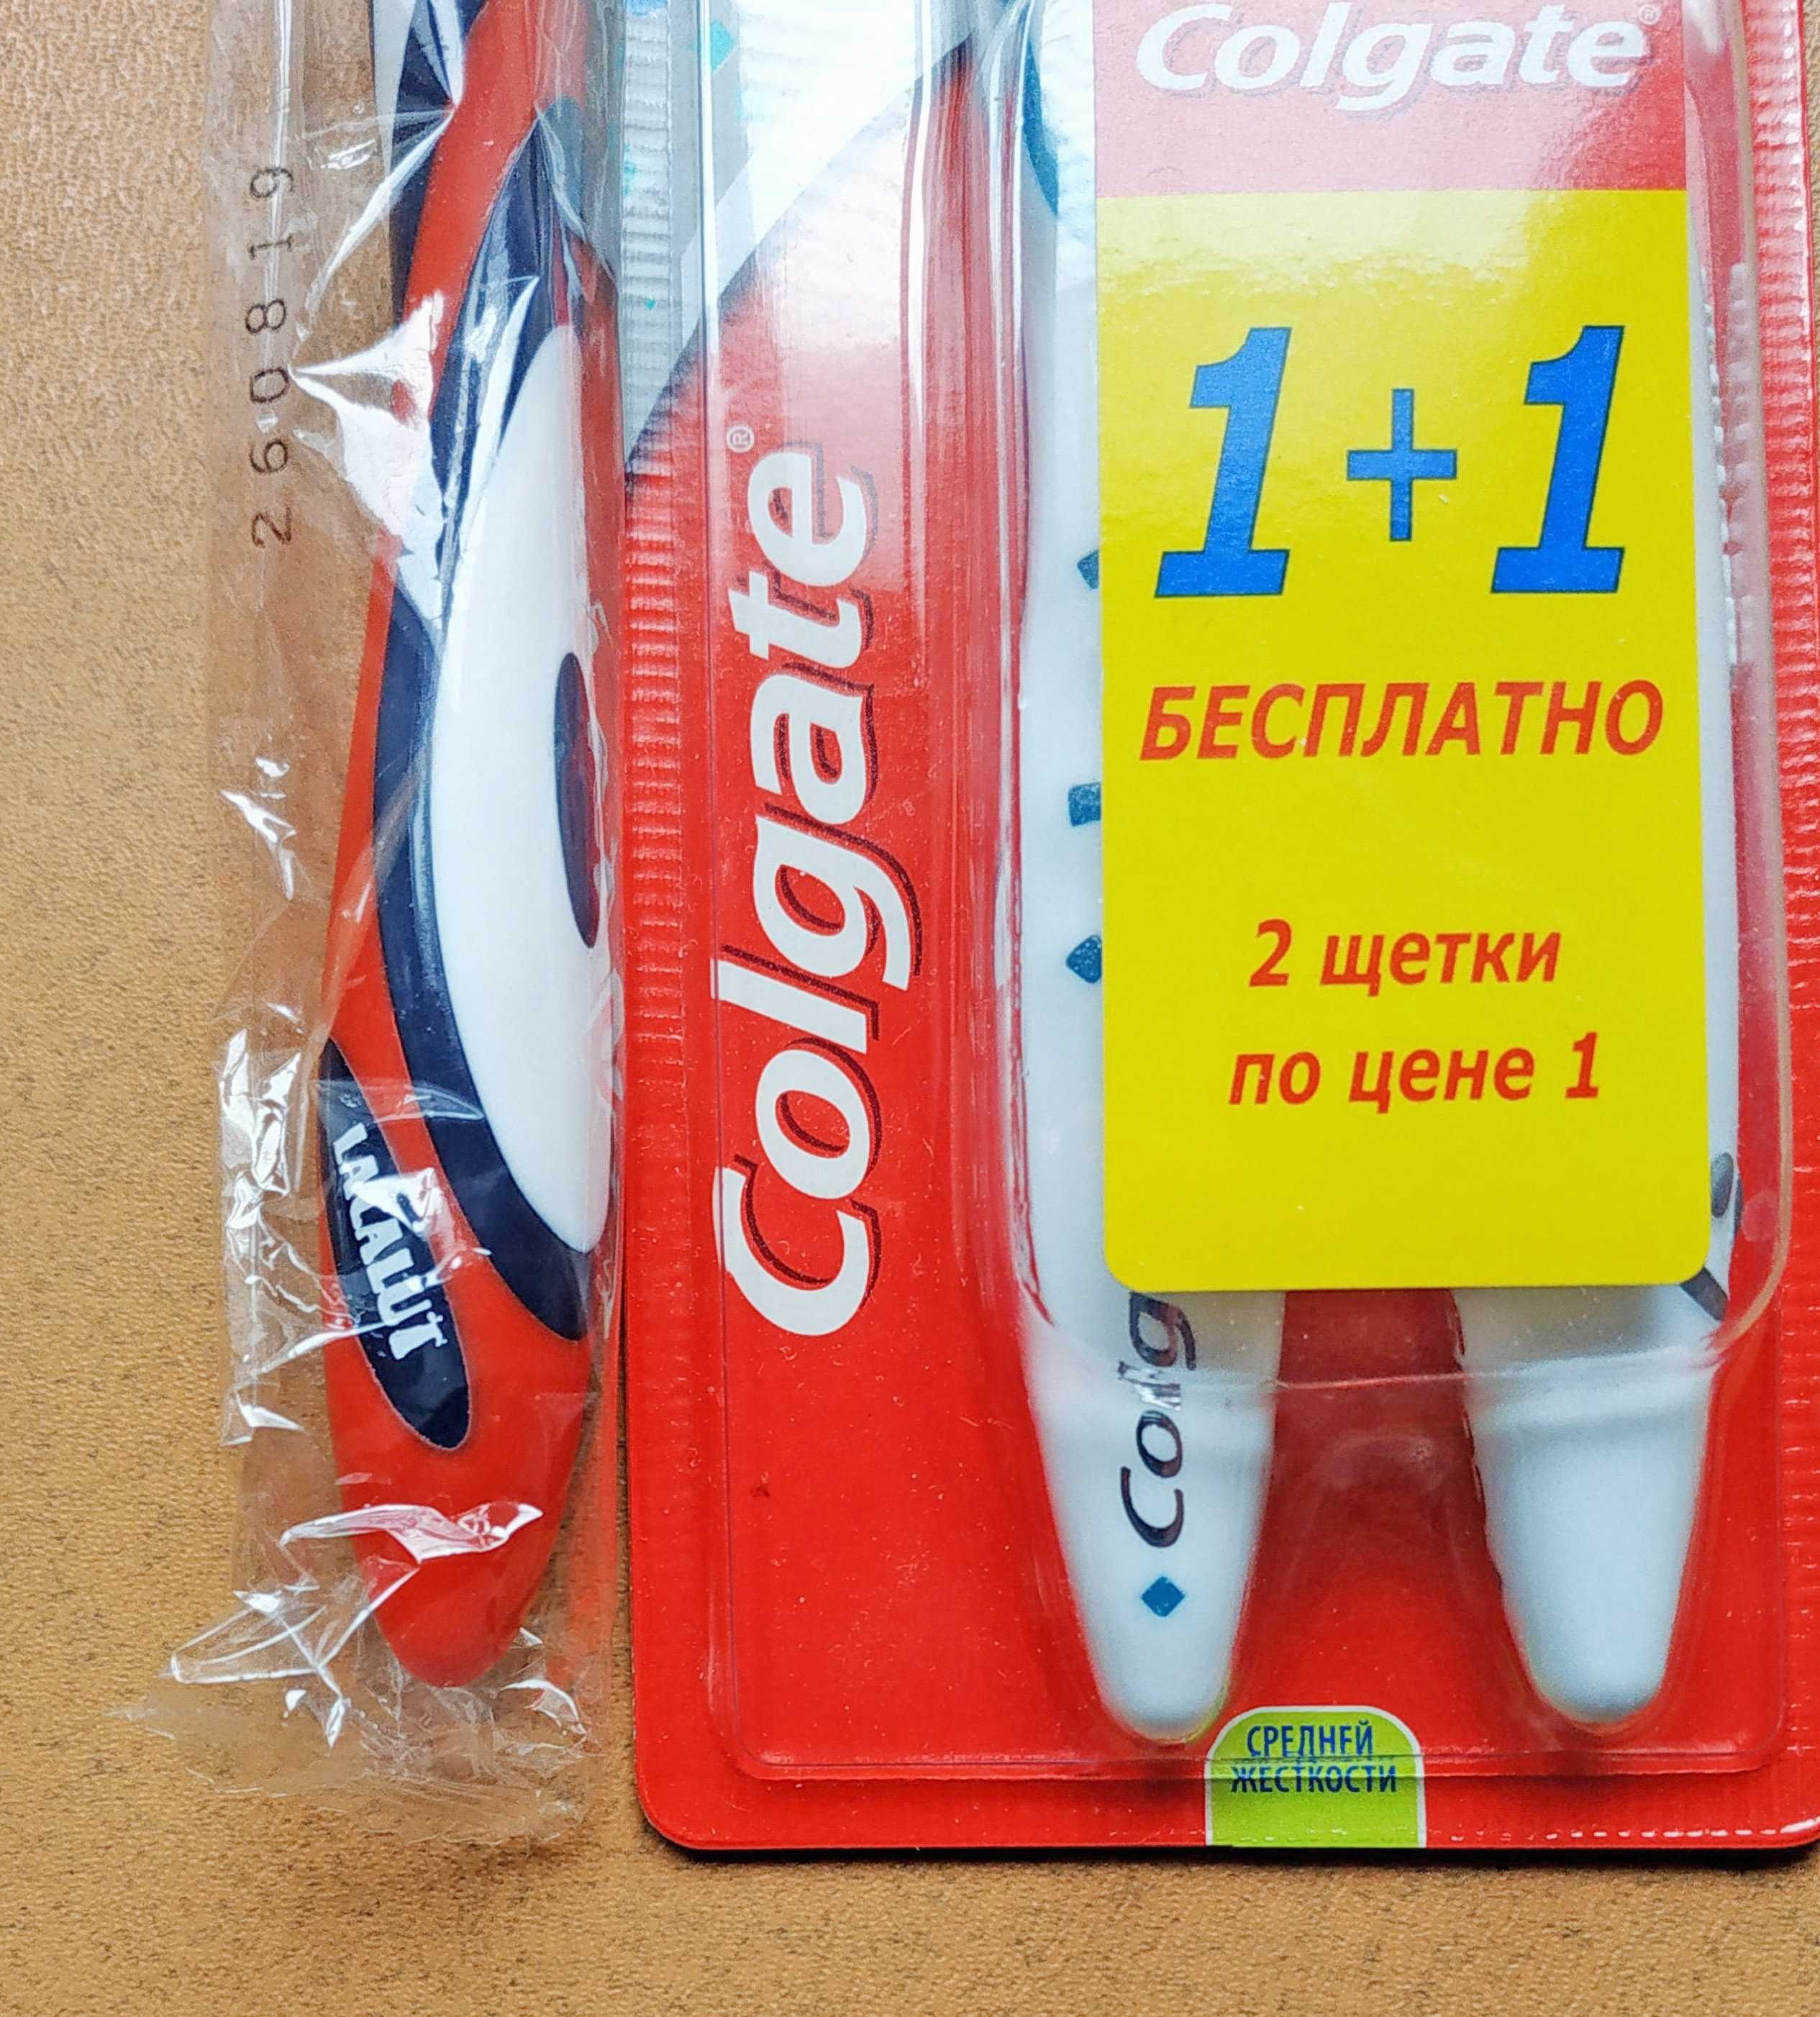 Localut и Colgate зубные щетки, три штуки, цена одна.